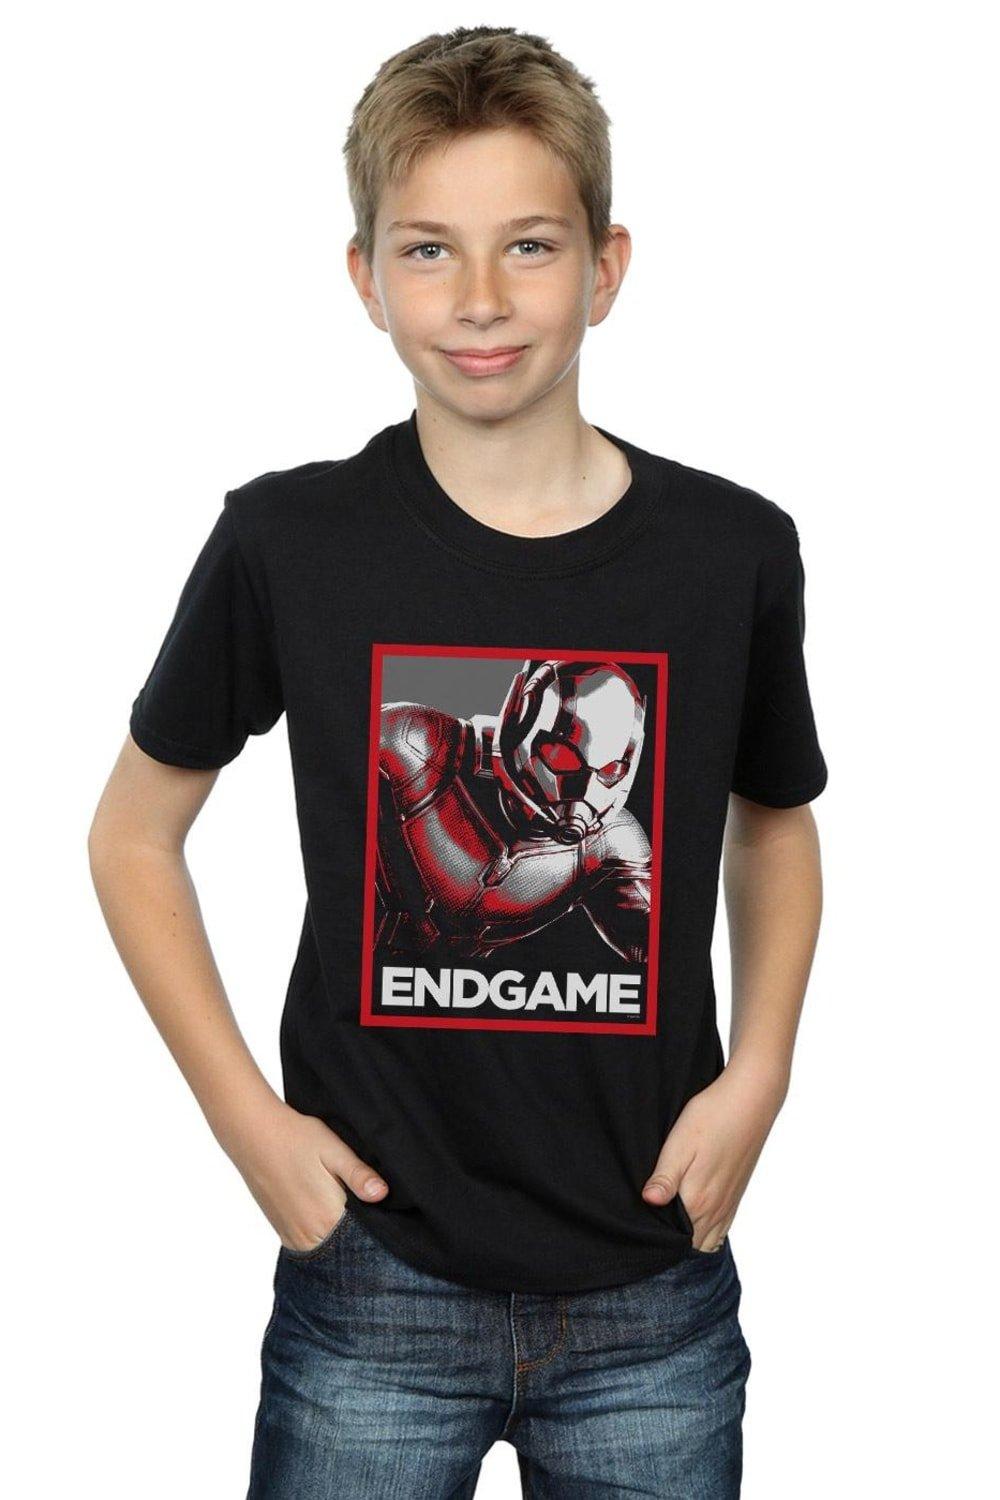 Avengers Endgame Ant-Man Poster T-Shirt